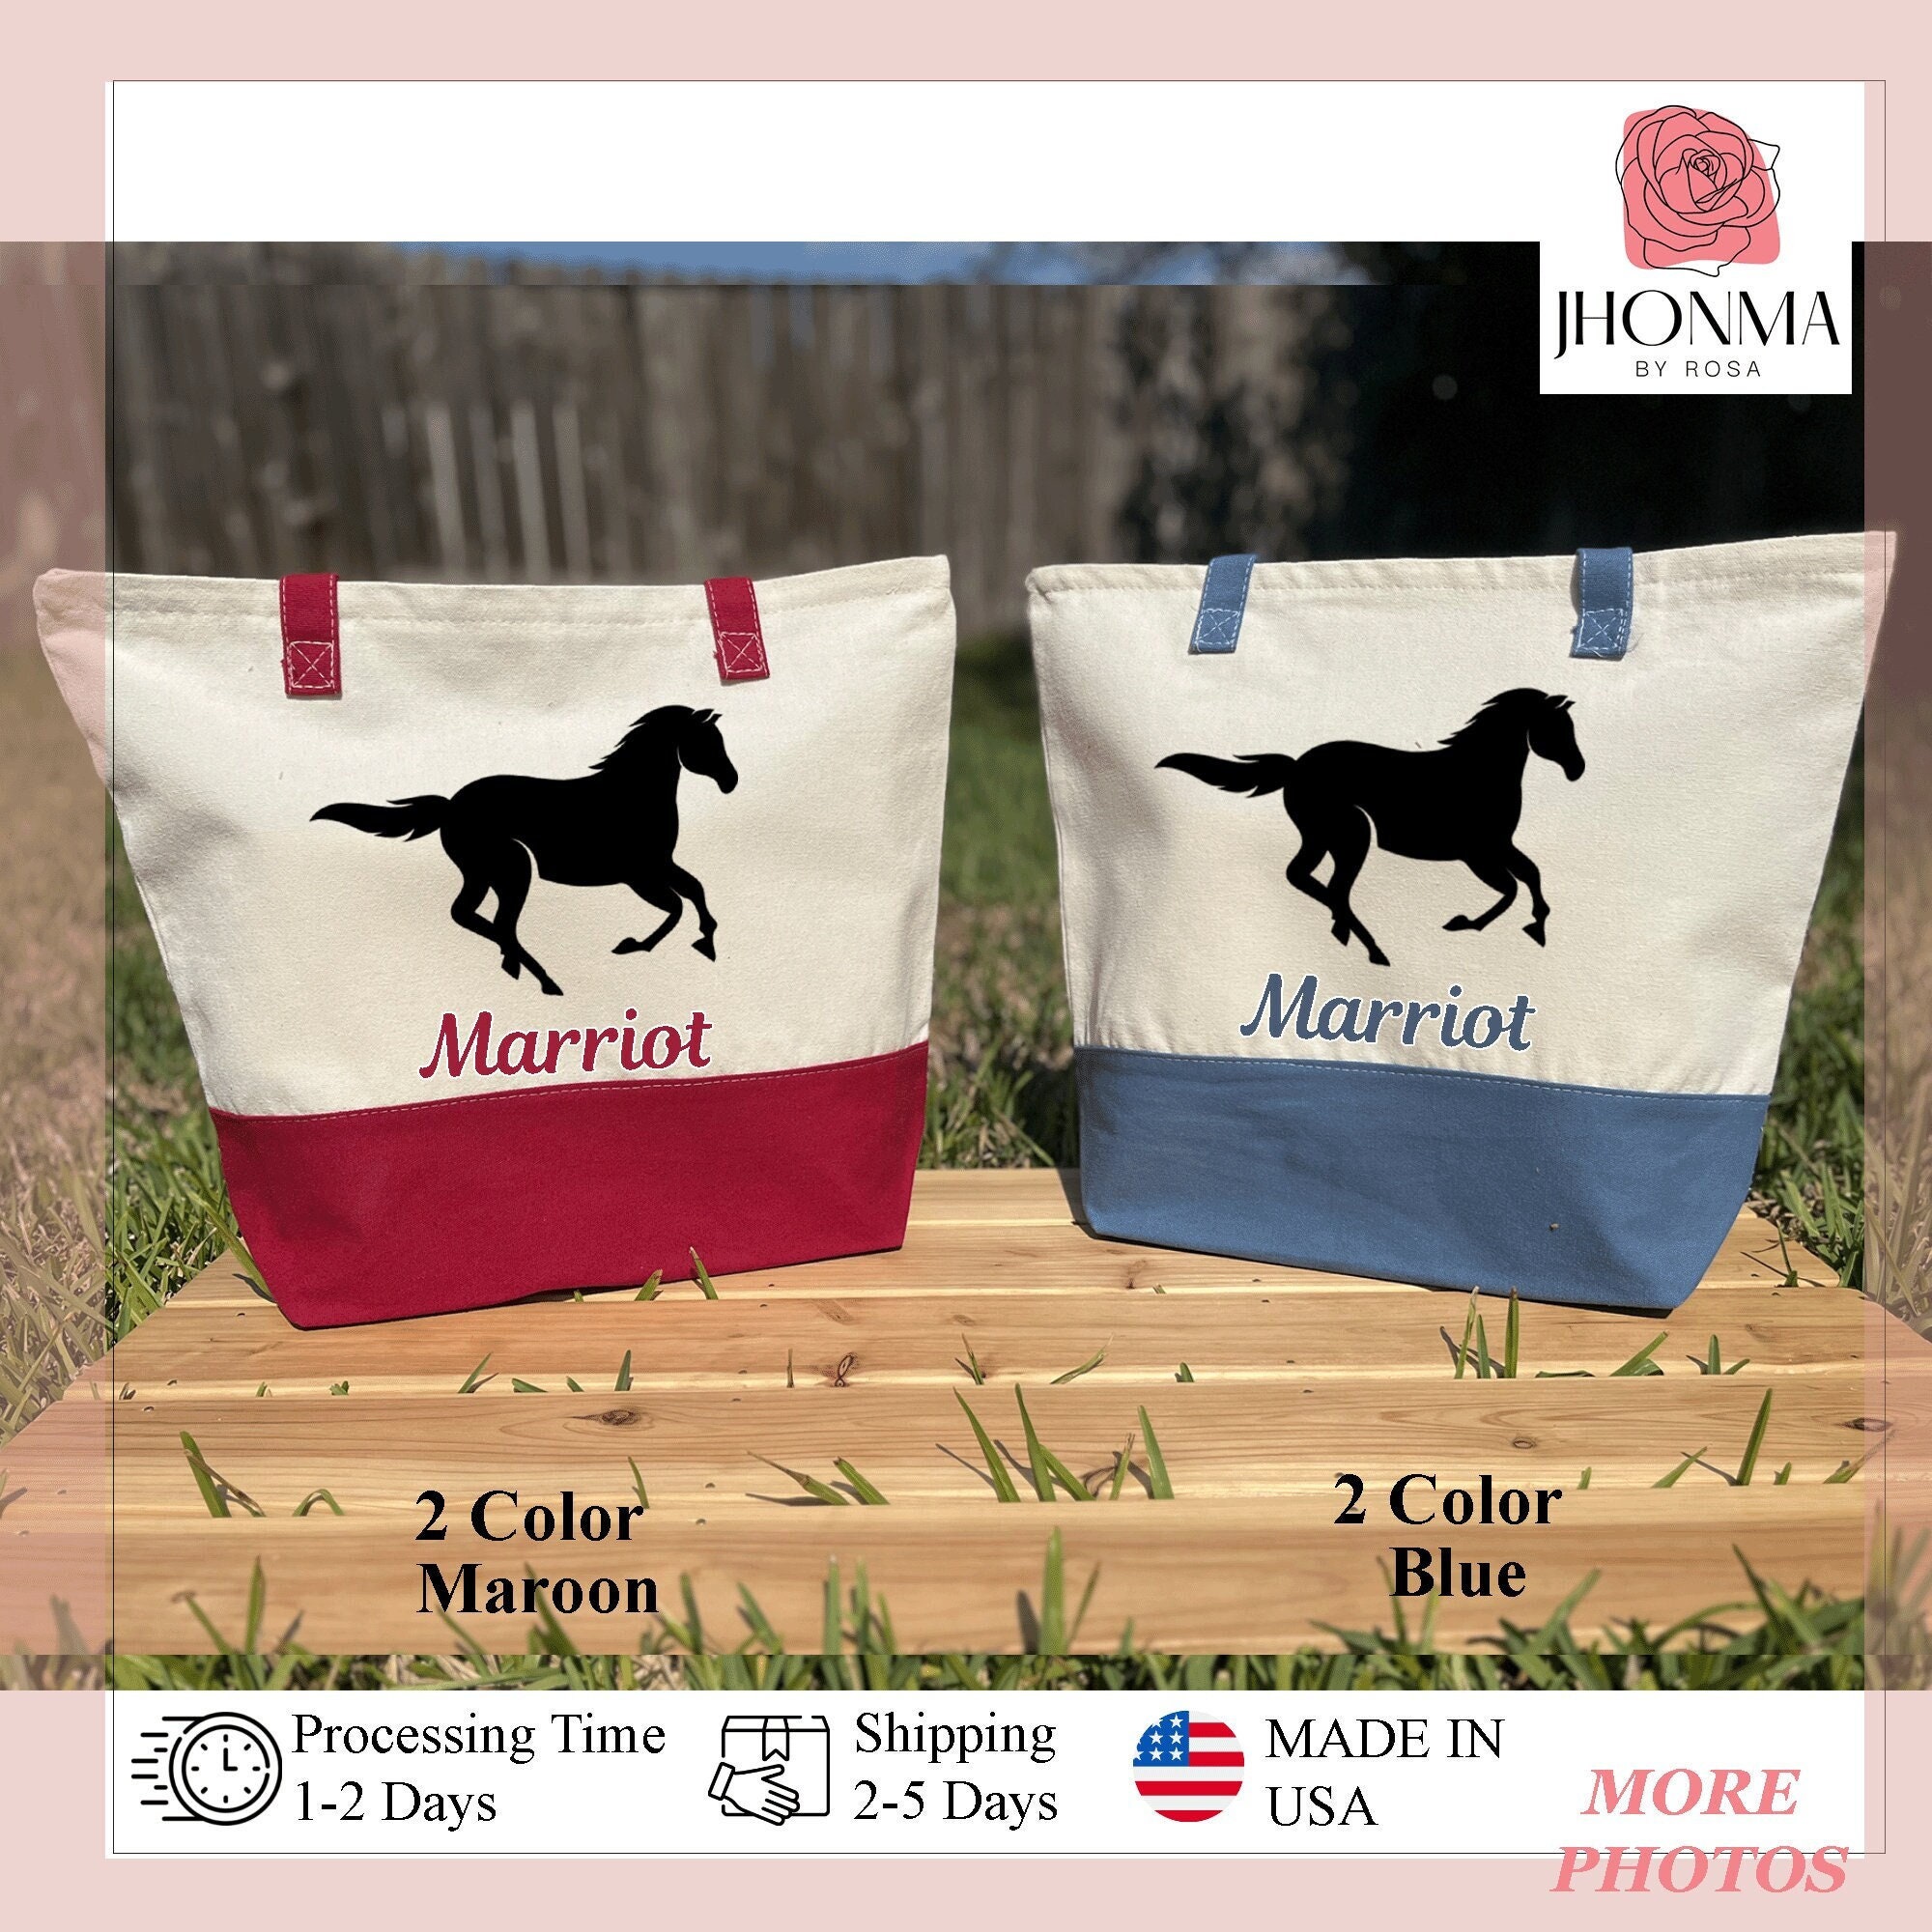 Derby Originals Premium Horse Blanket Storage Bag with Mesh